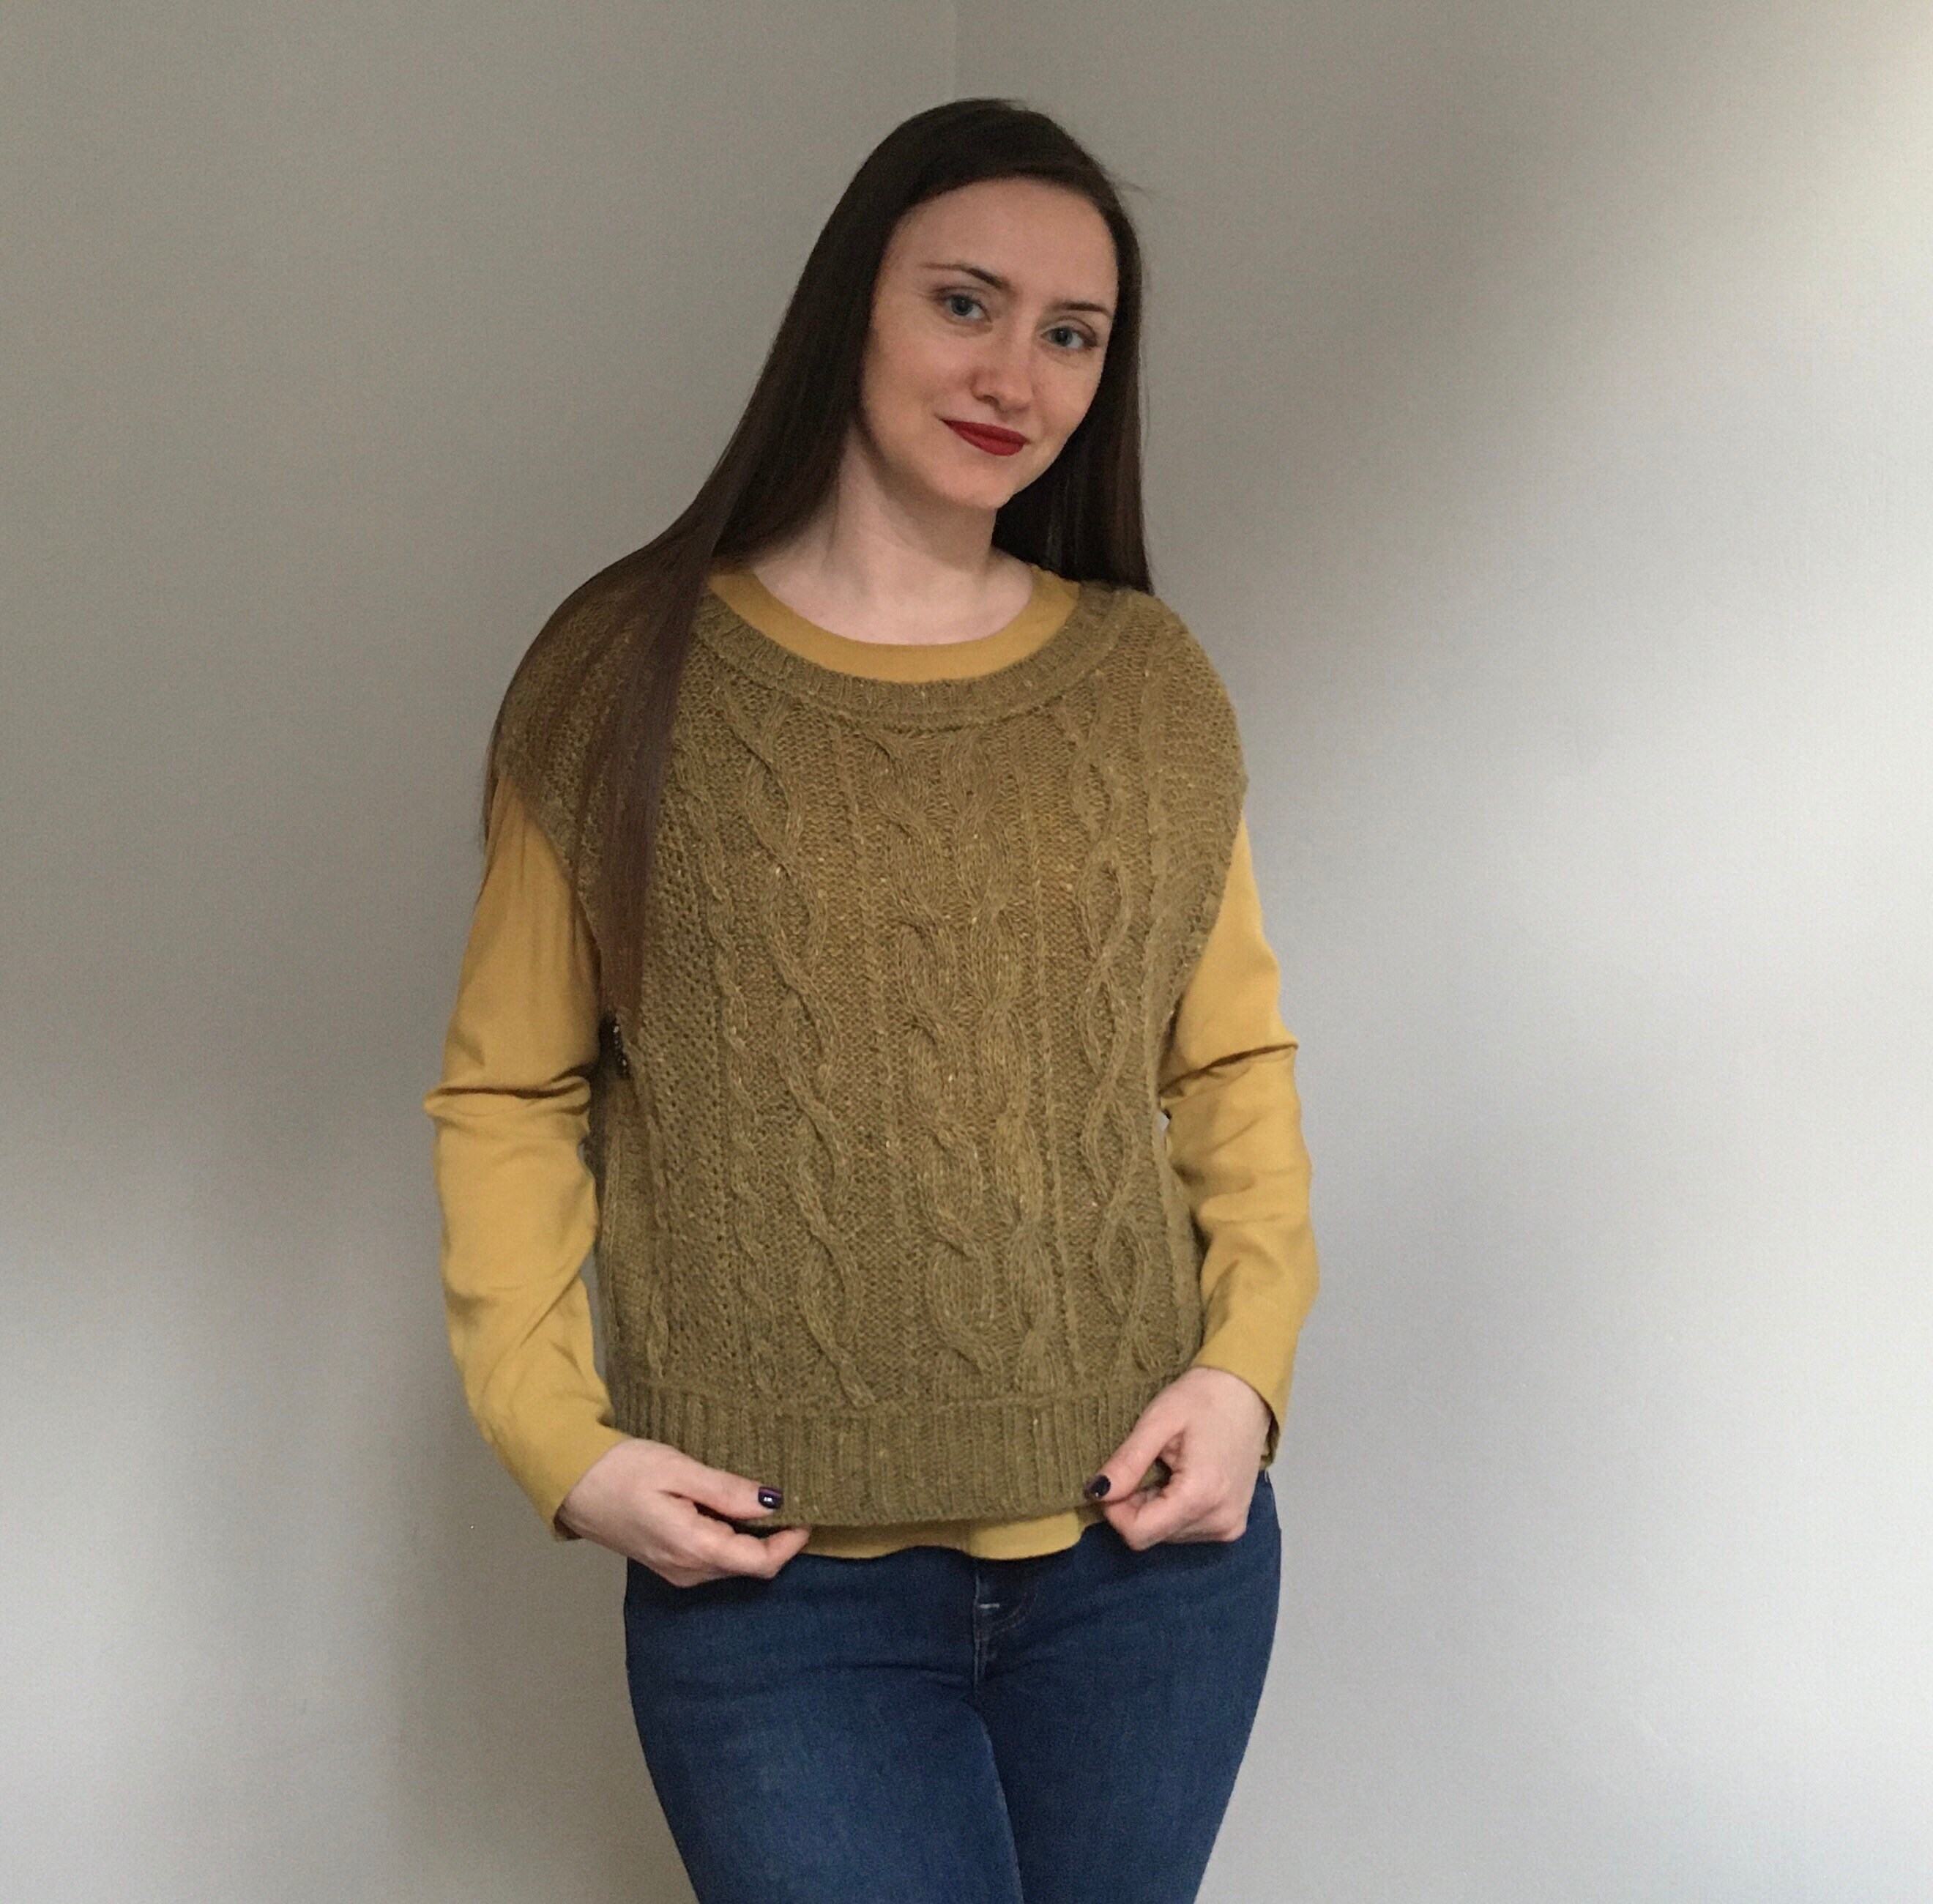 Sleeveless knitted vest Womens knitted vest Knitted vest | Etsy